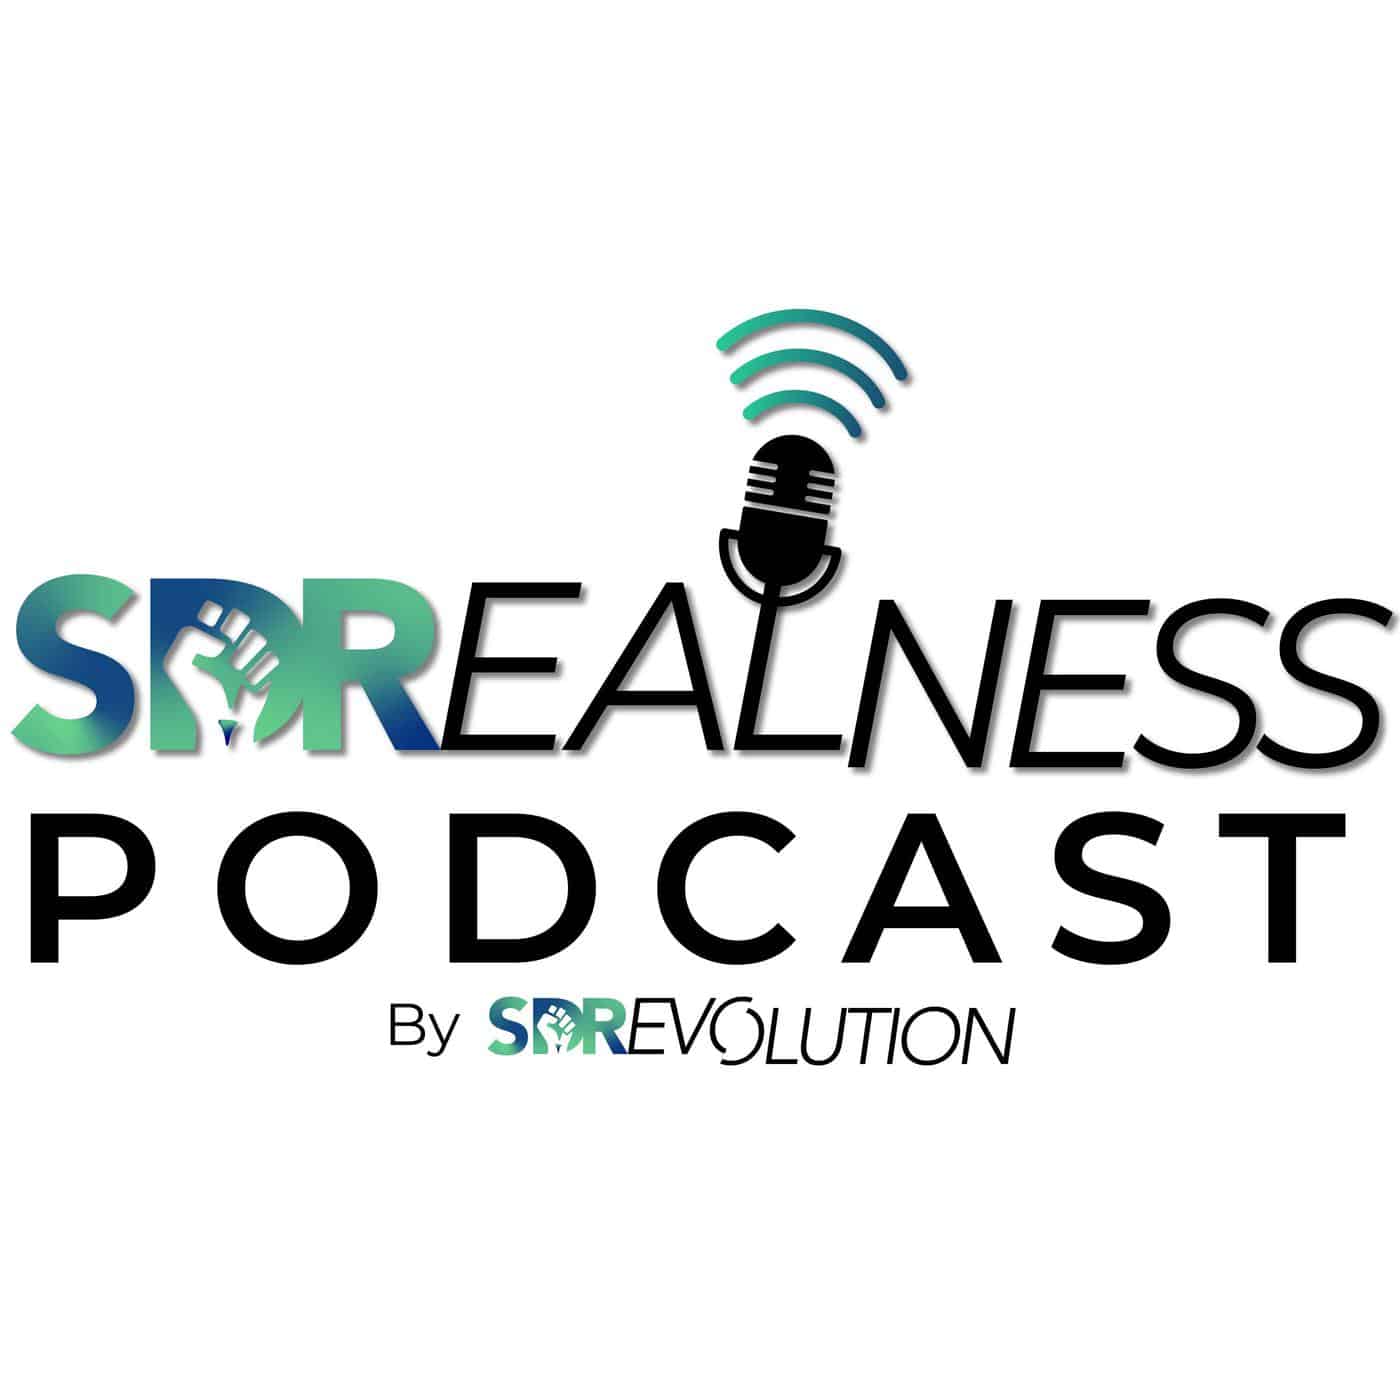 The SDRealness Podcas‪t‬